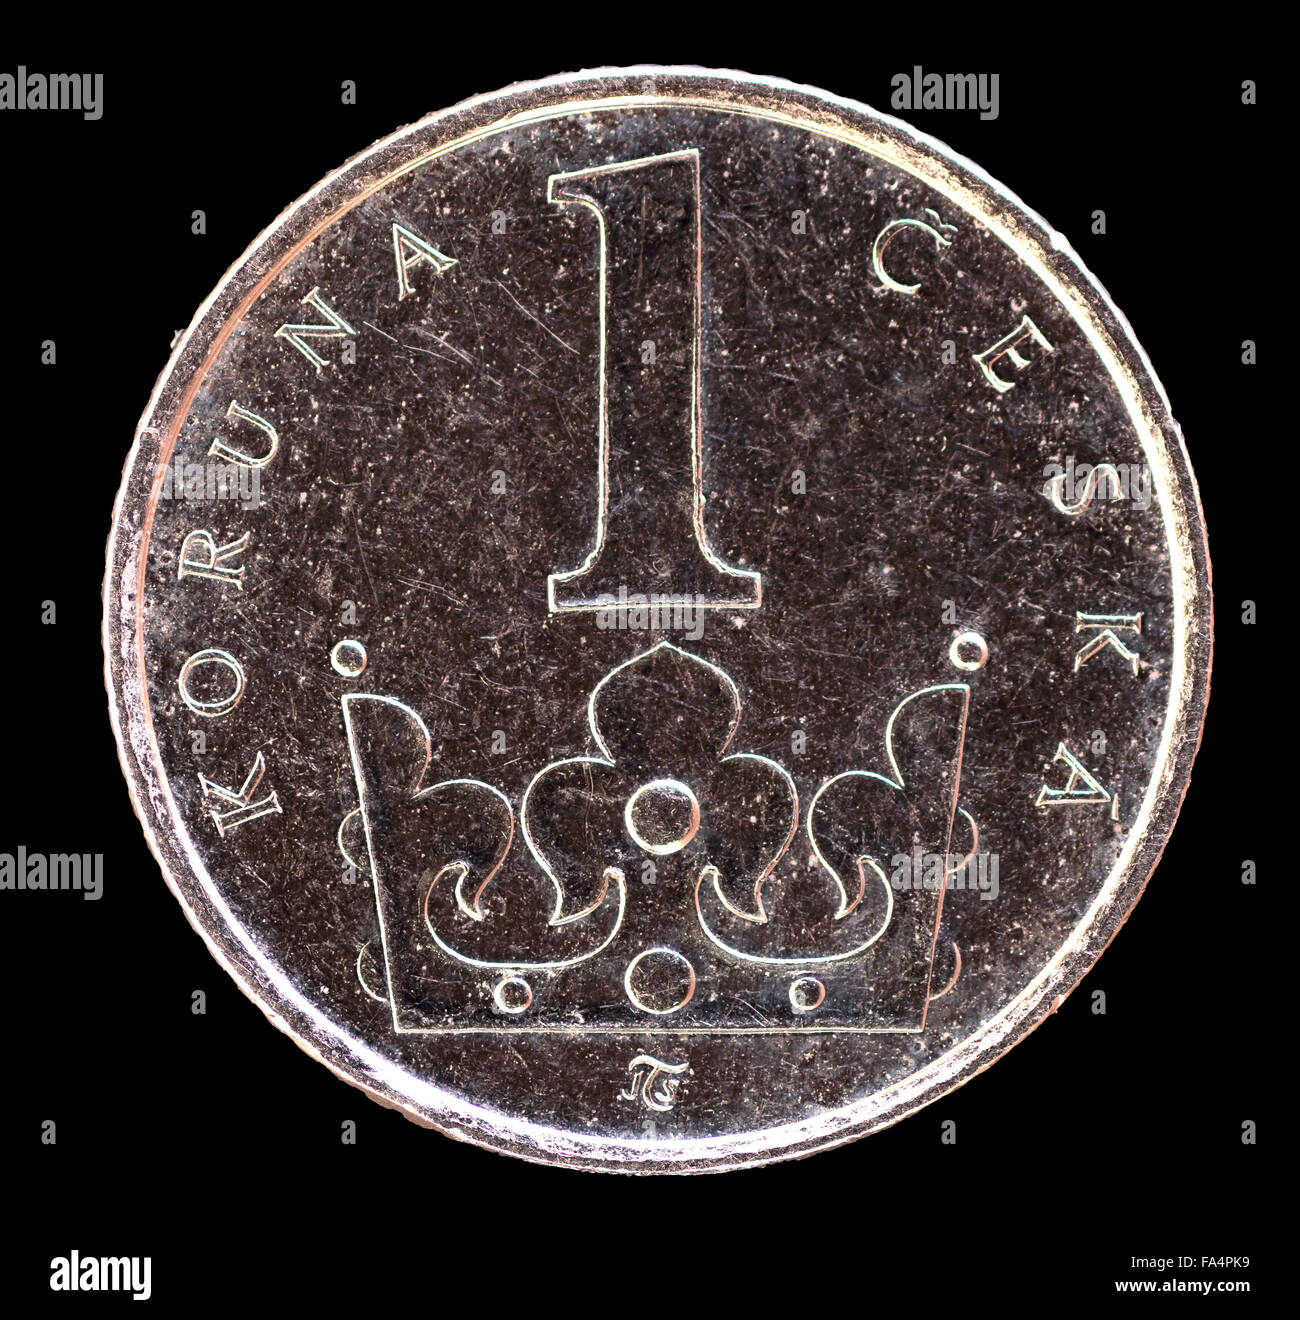 Le visage de l'une queue koruna coin, émis par la République tchèque en 2009, représentant une couronne. Droit isolé sur fond noir Banque D'Images